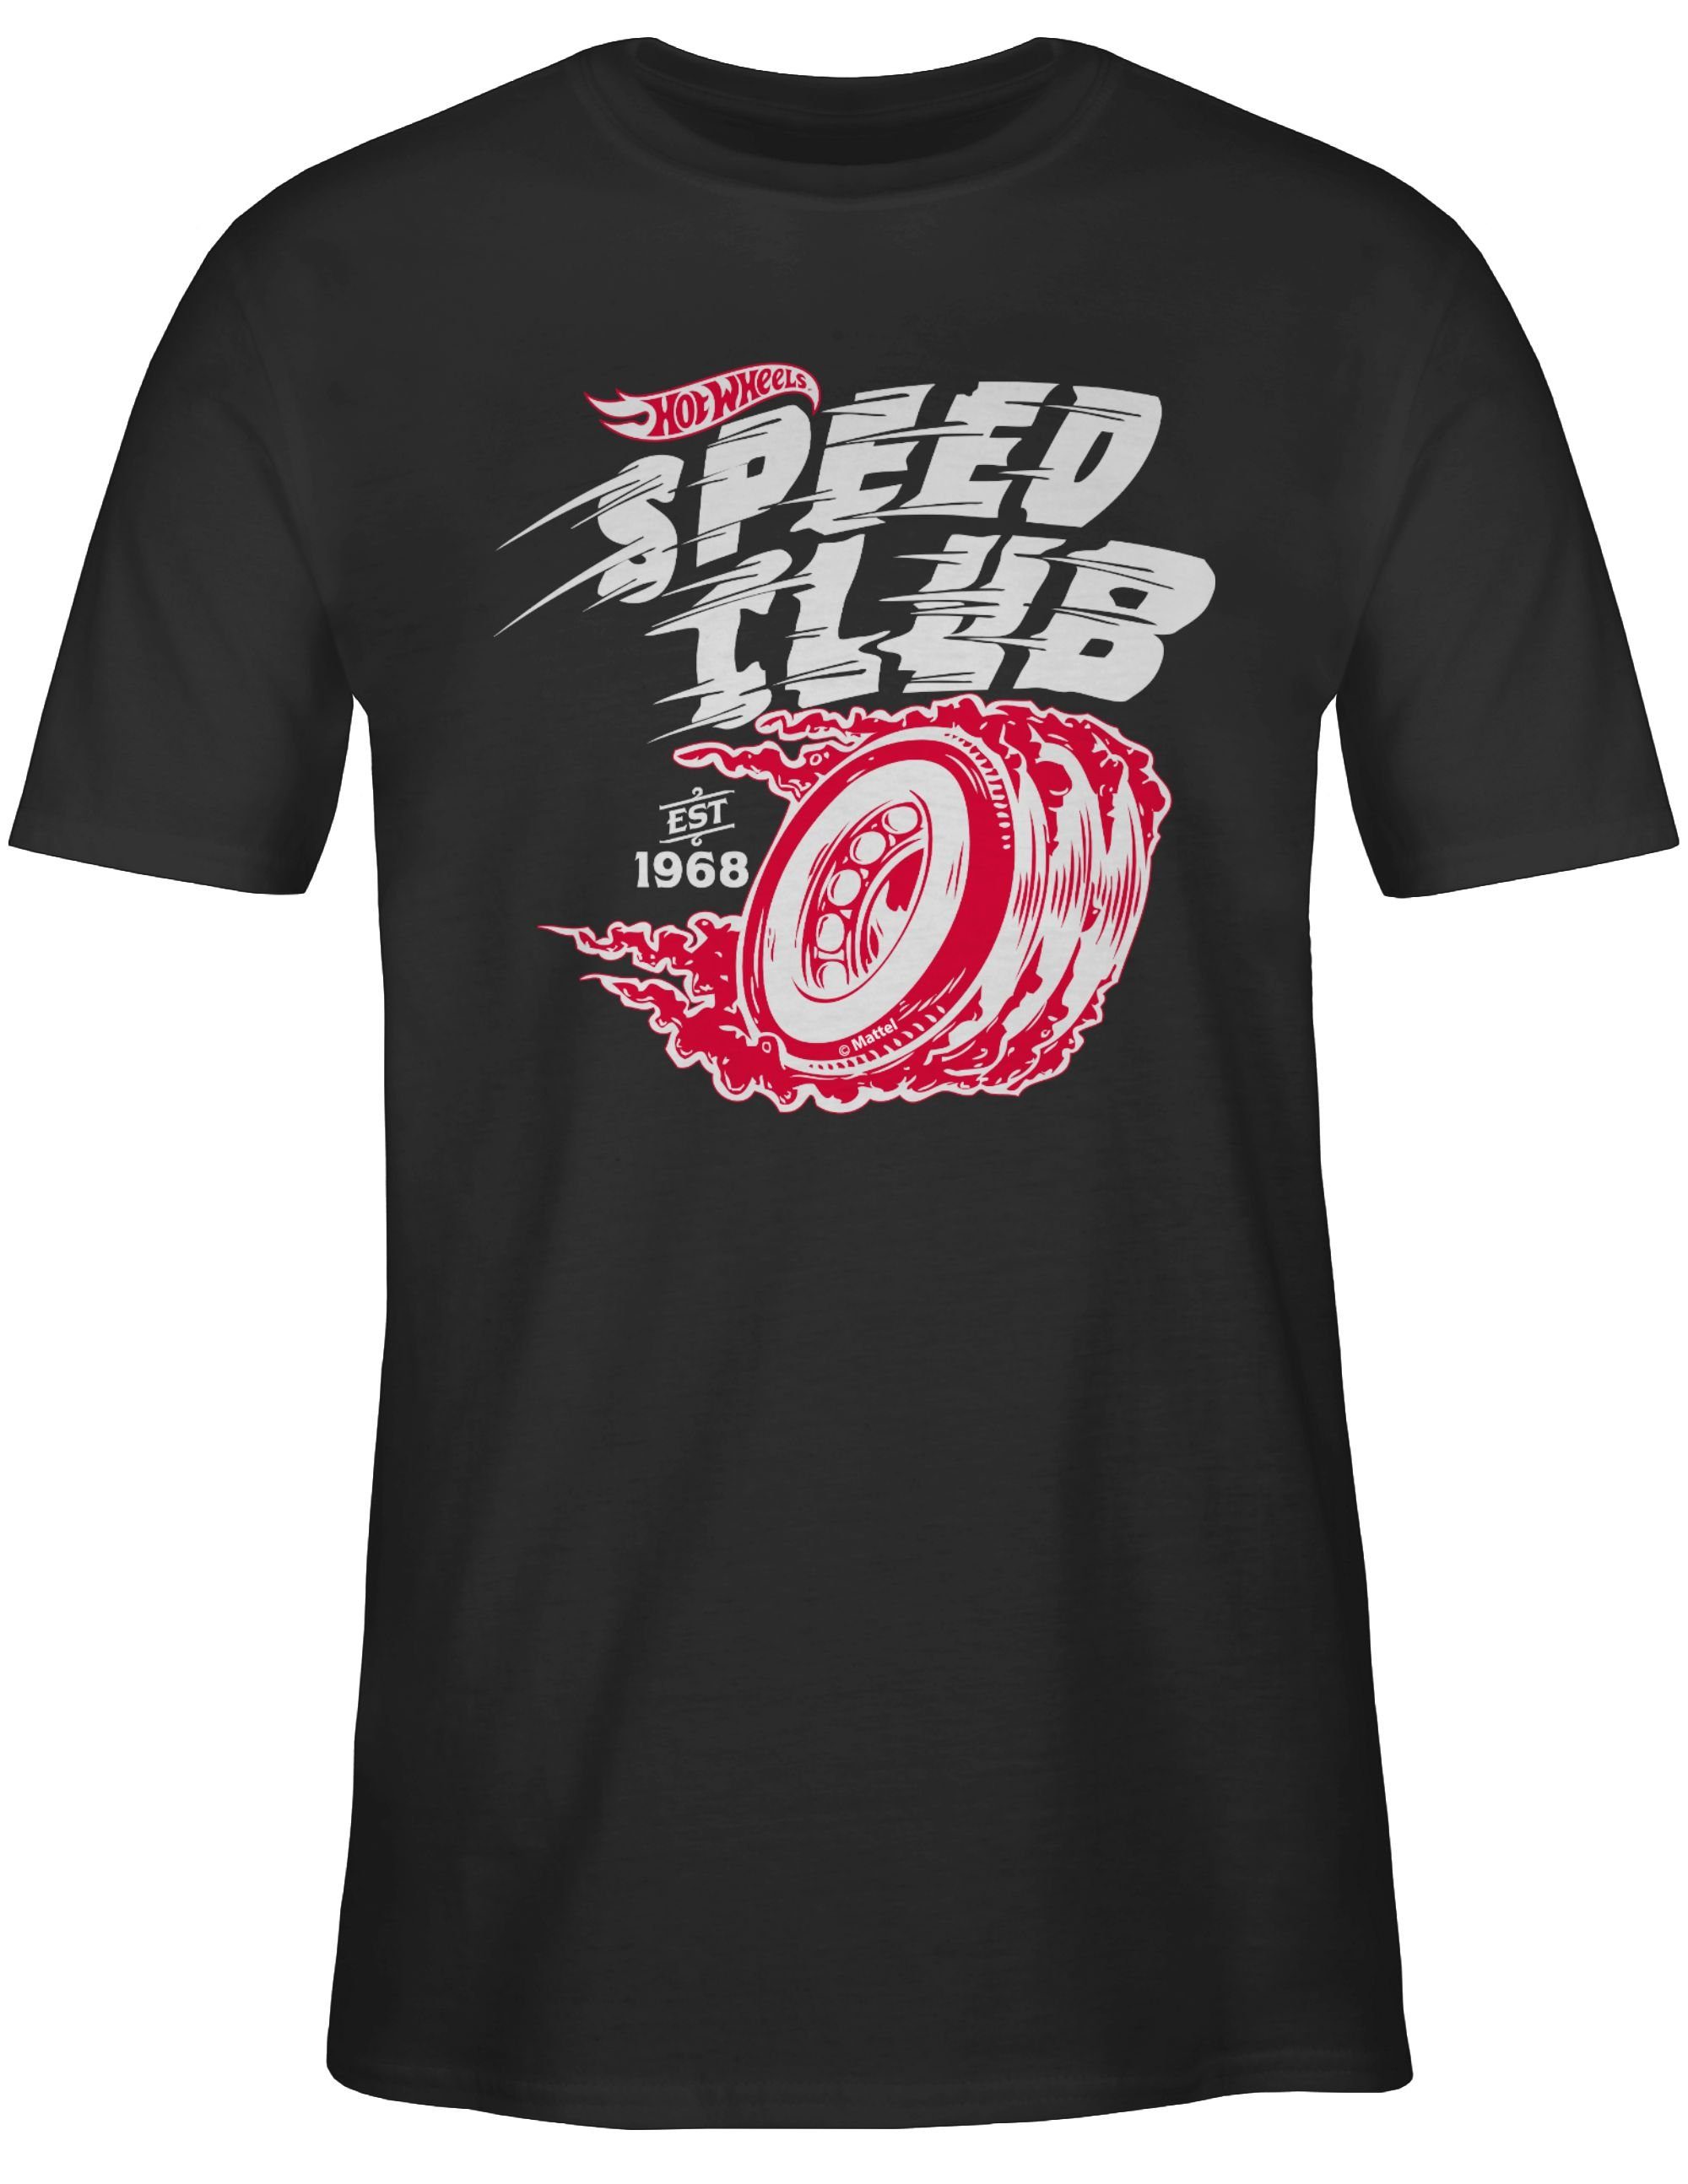 Speed - Club Herren Hot weiß/rot Schwarz T-Shirt Wheels Shirtracer 02